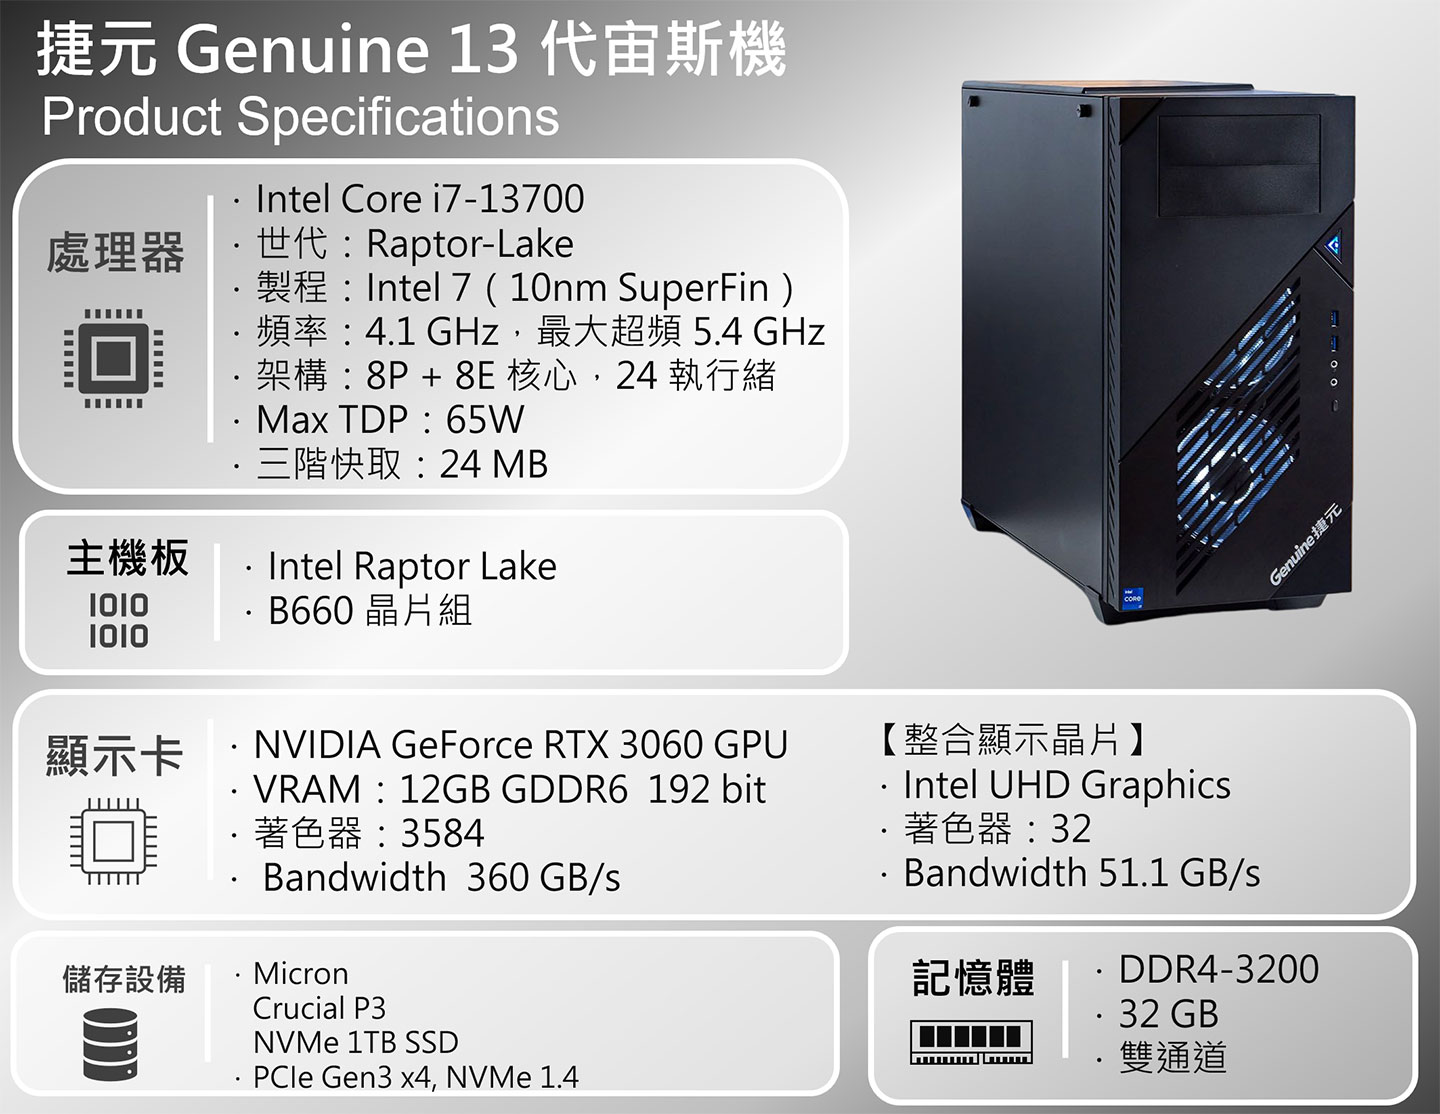 捷元 Genuine 13 代宙斯機強襲！升級第 13 代 Intel Core 系列處理器，搭配主流規格更能輕鬆入手～捷元 BTO 服務帶來 DIY 彈性，保固更無後顧之憂！